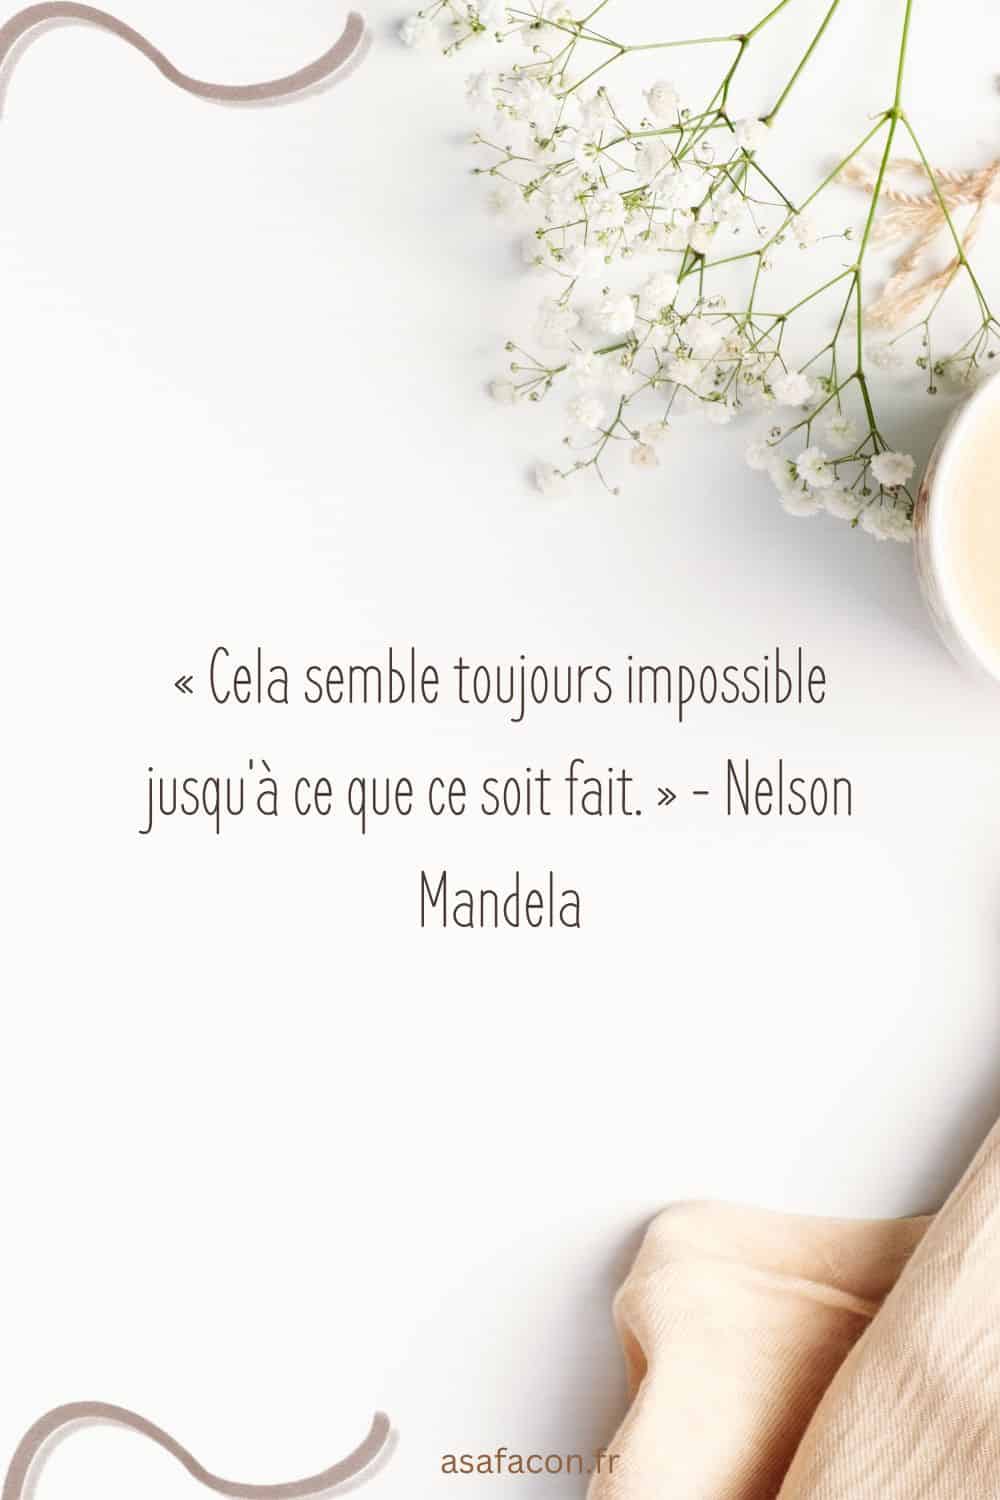 « Cela semble toujours impossible jusqu'à ce que ce soit fait. » - Nelson Mandela